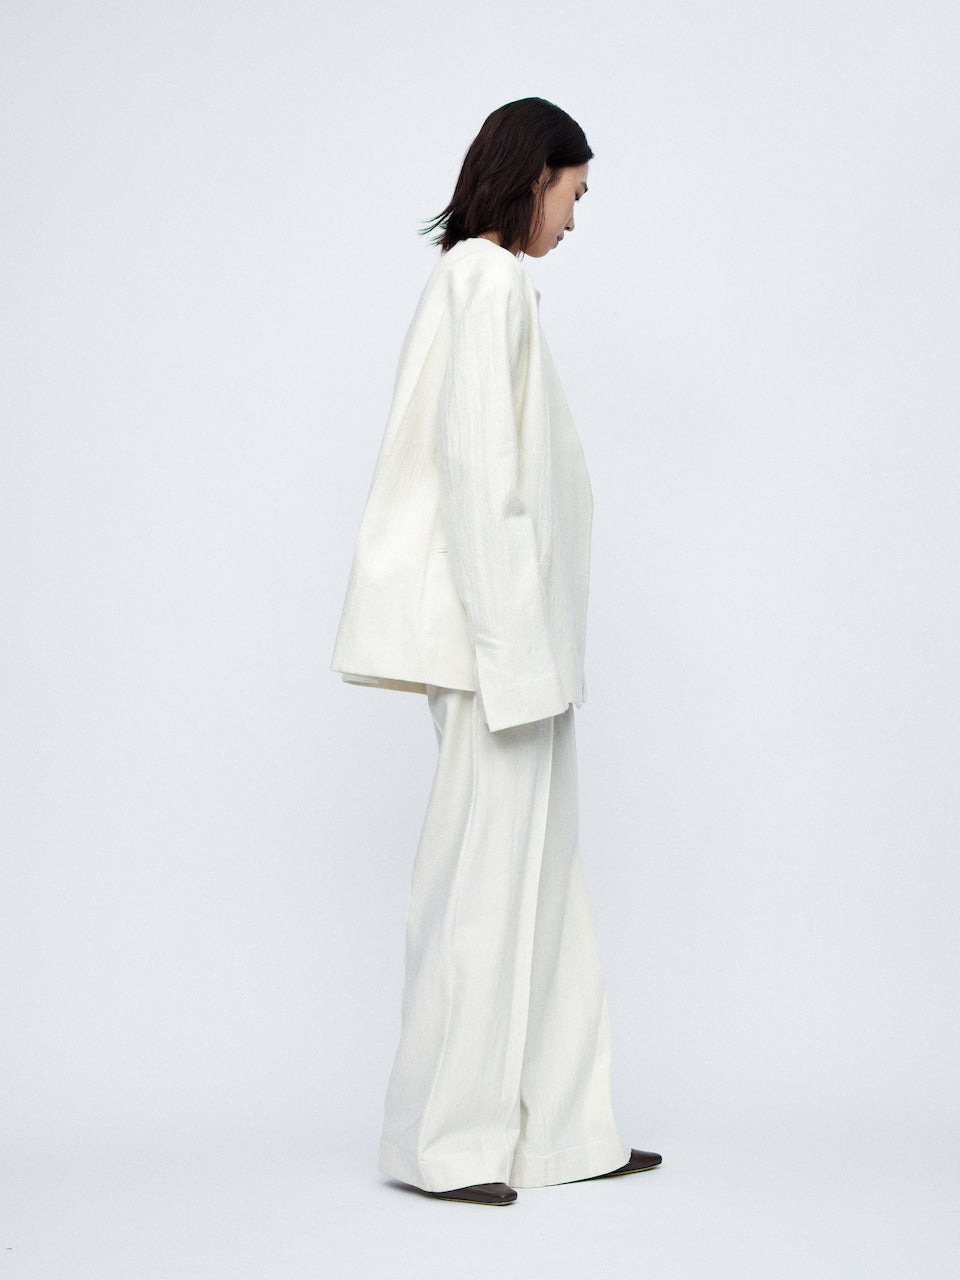 AW23 - White Avonia Tailored Jacket